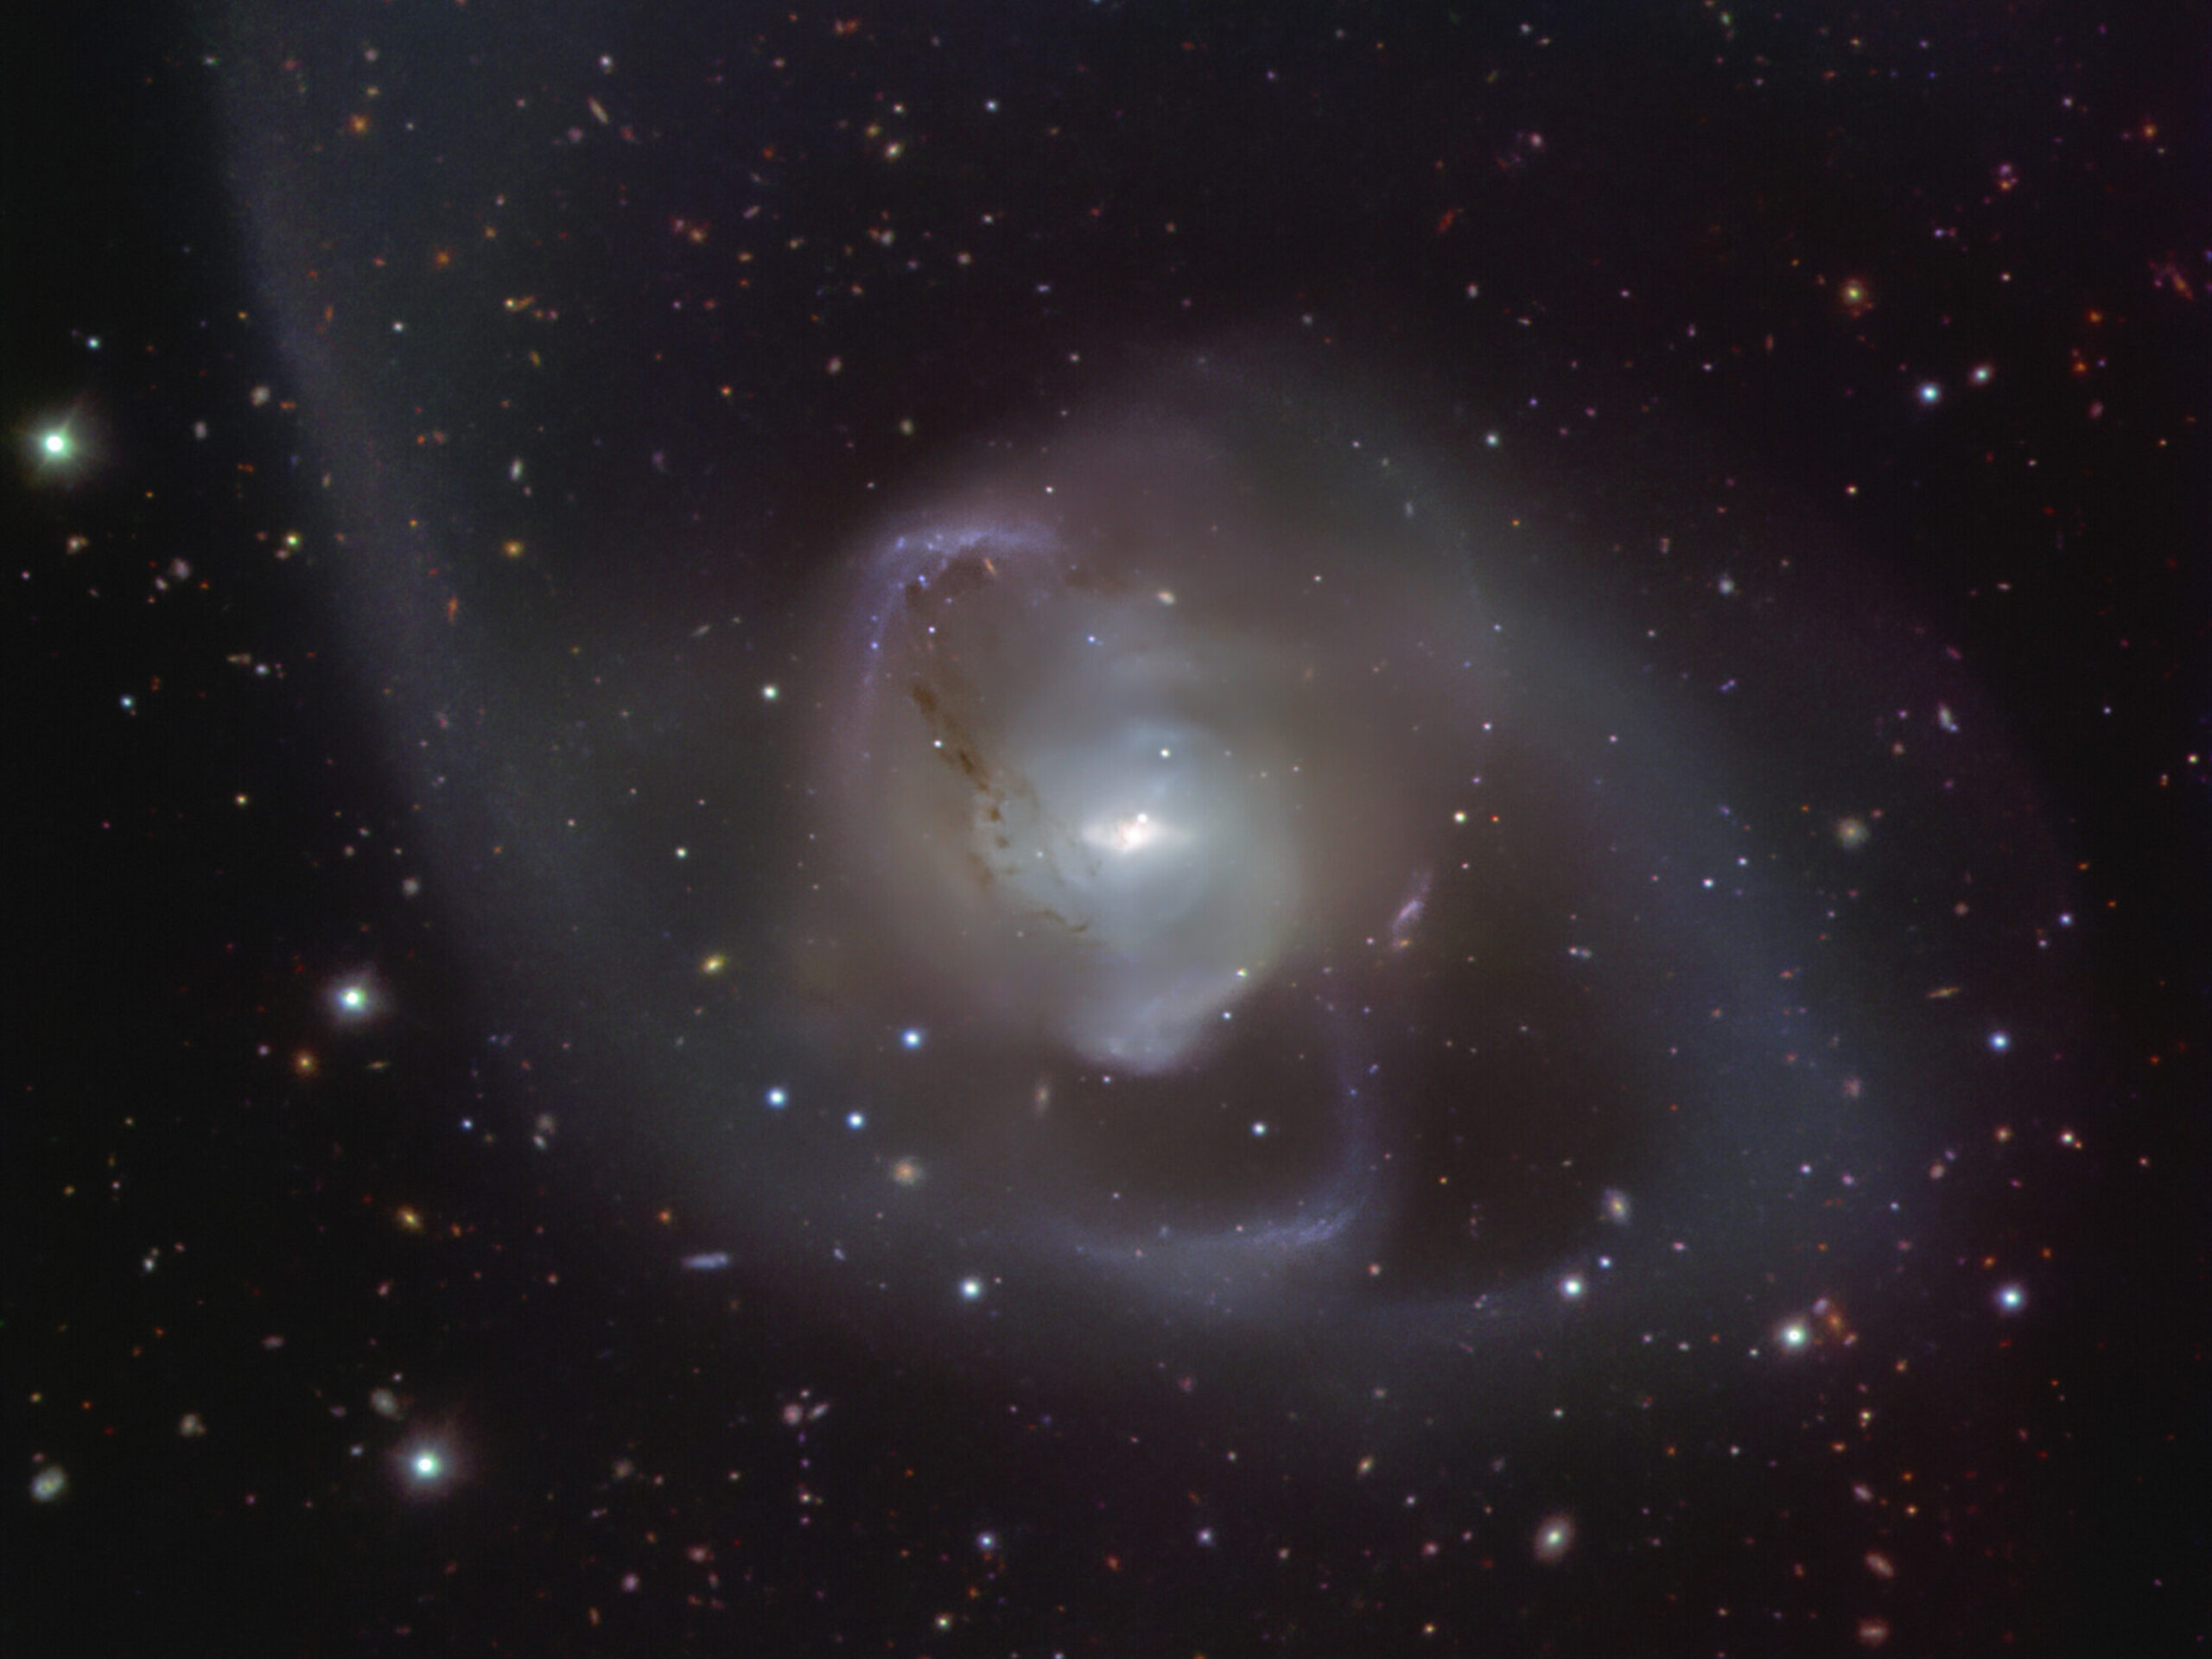 Un telescopio de ESO obtiene una imagen de una espectacular danza cósmica